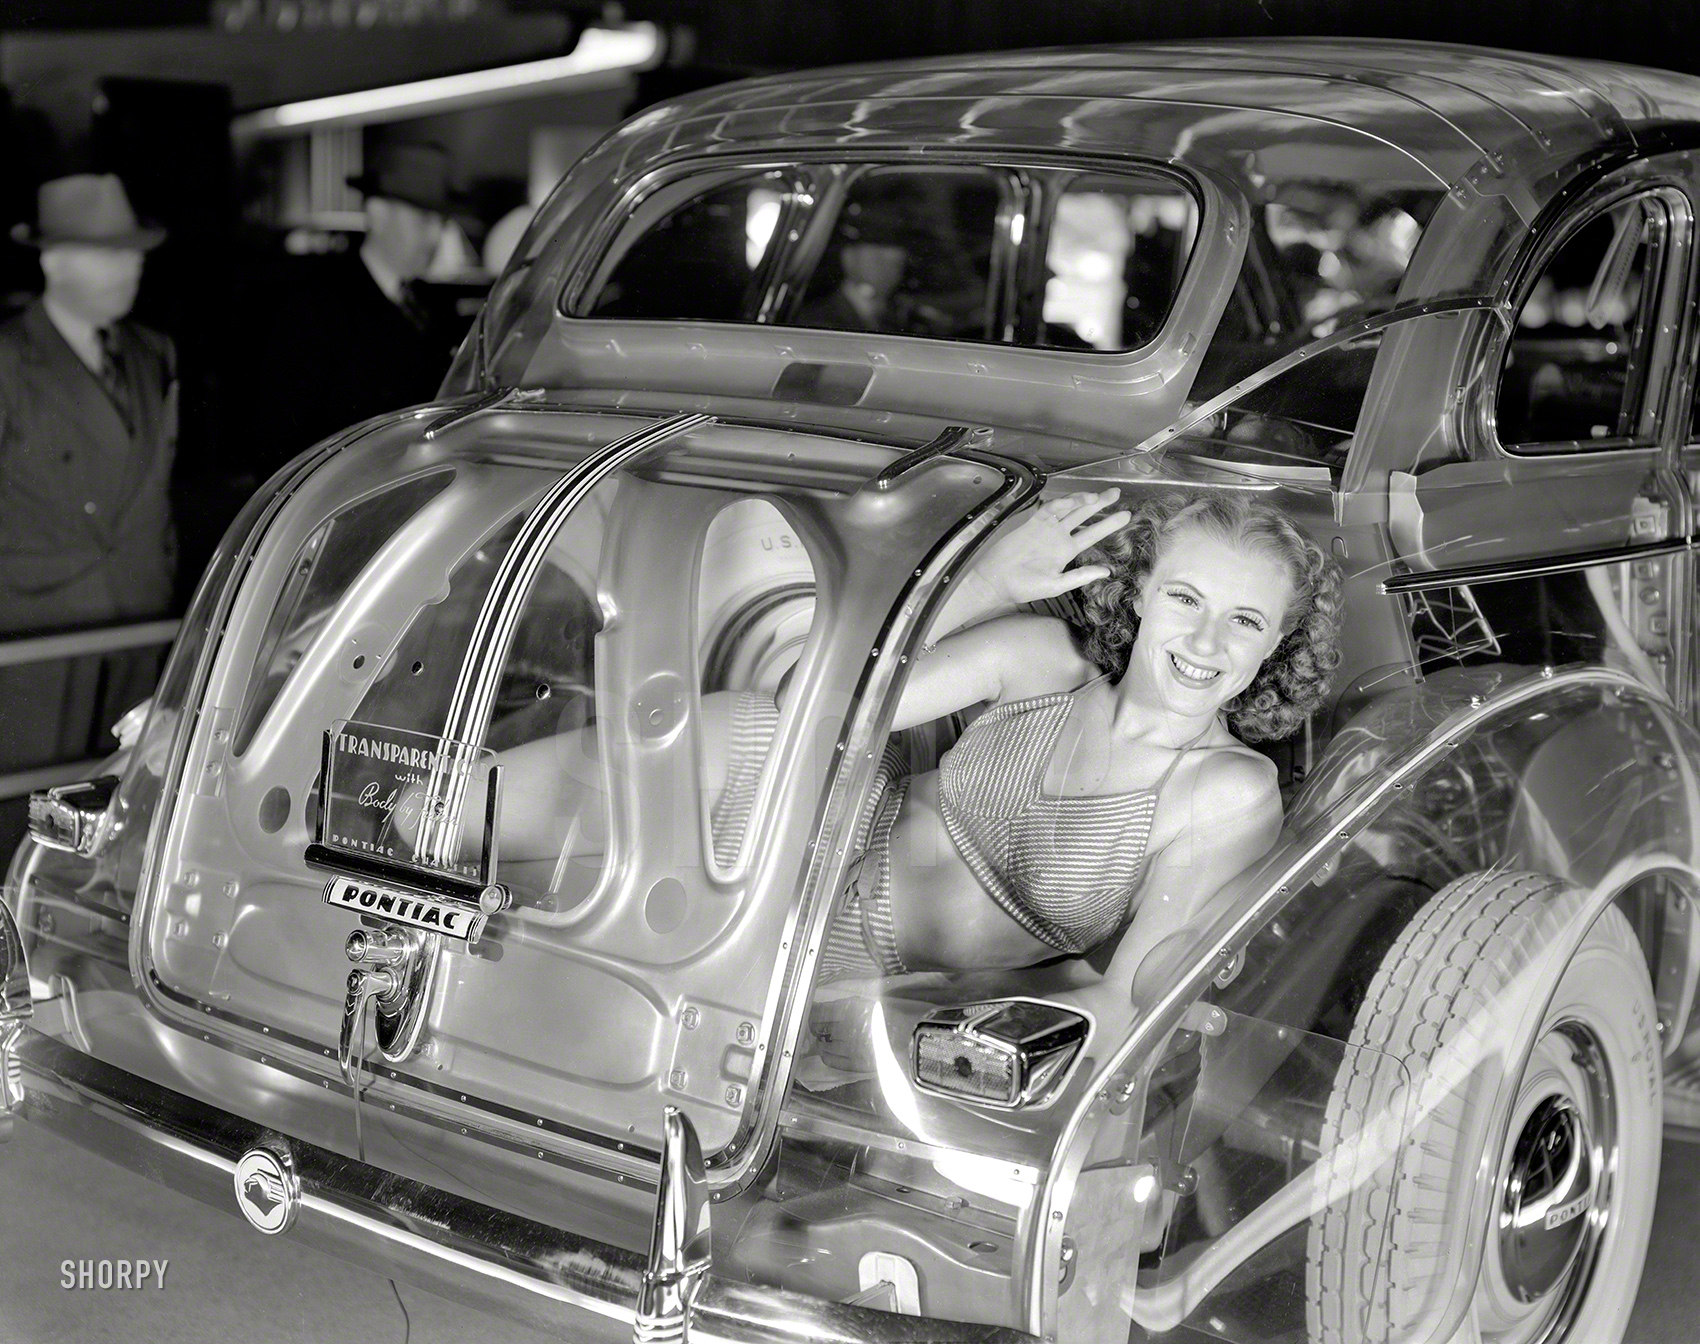 1700x1344, 602 Kb / прозрачный, седан, выставка, понтиак, автомобиль, багажник, Сан-Франциско, США, 1940, плексиглас, девушка, ч/б, блондинка, улыбка, колесо